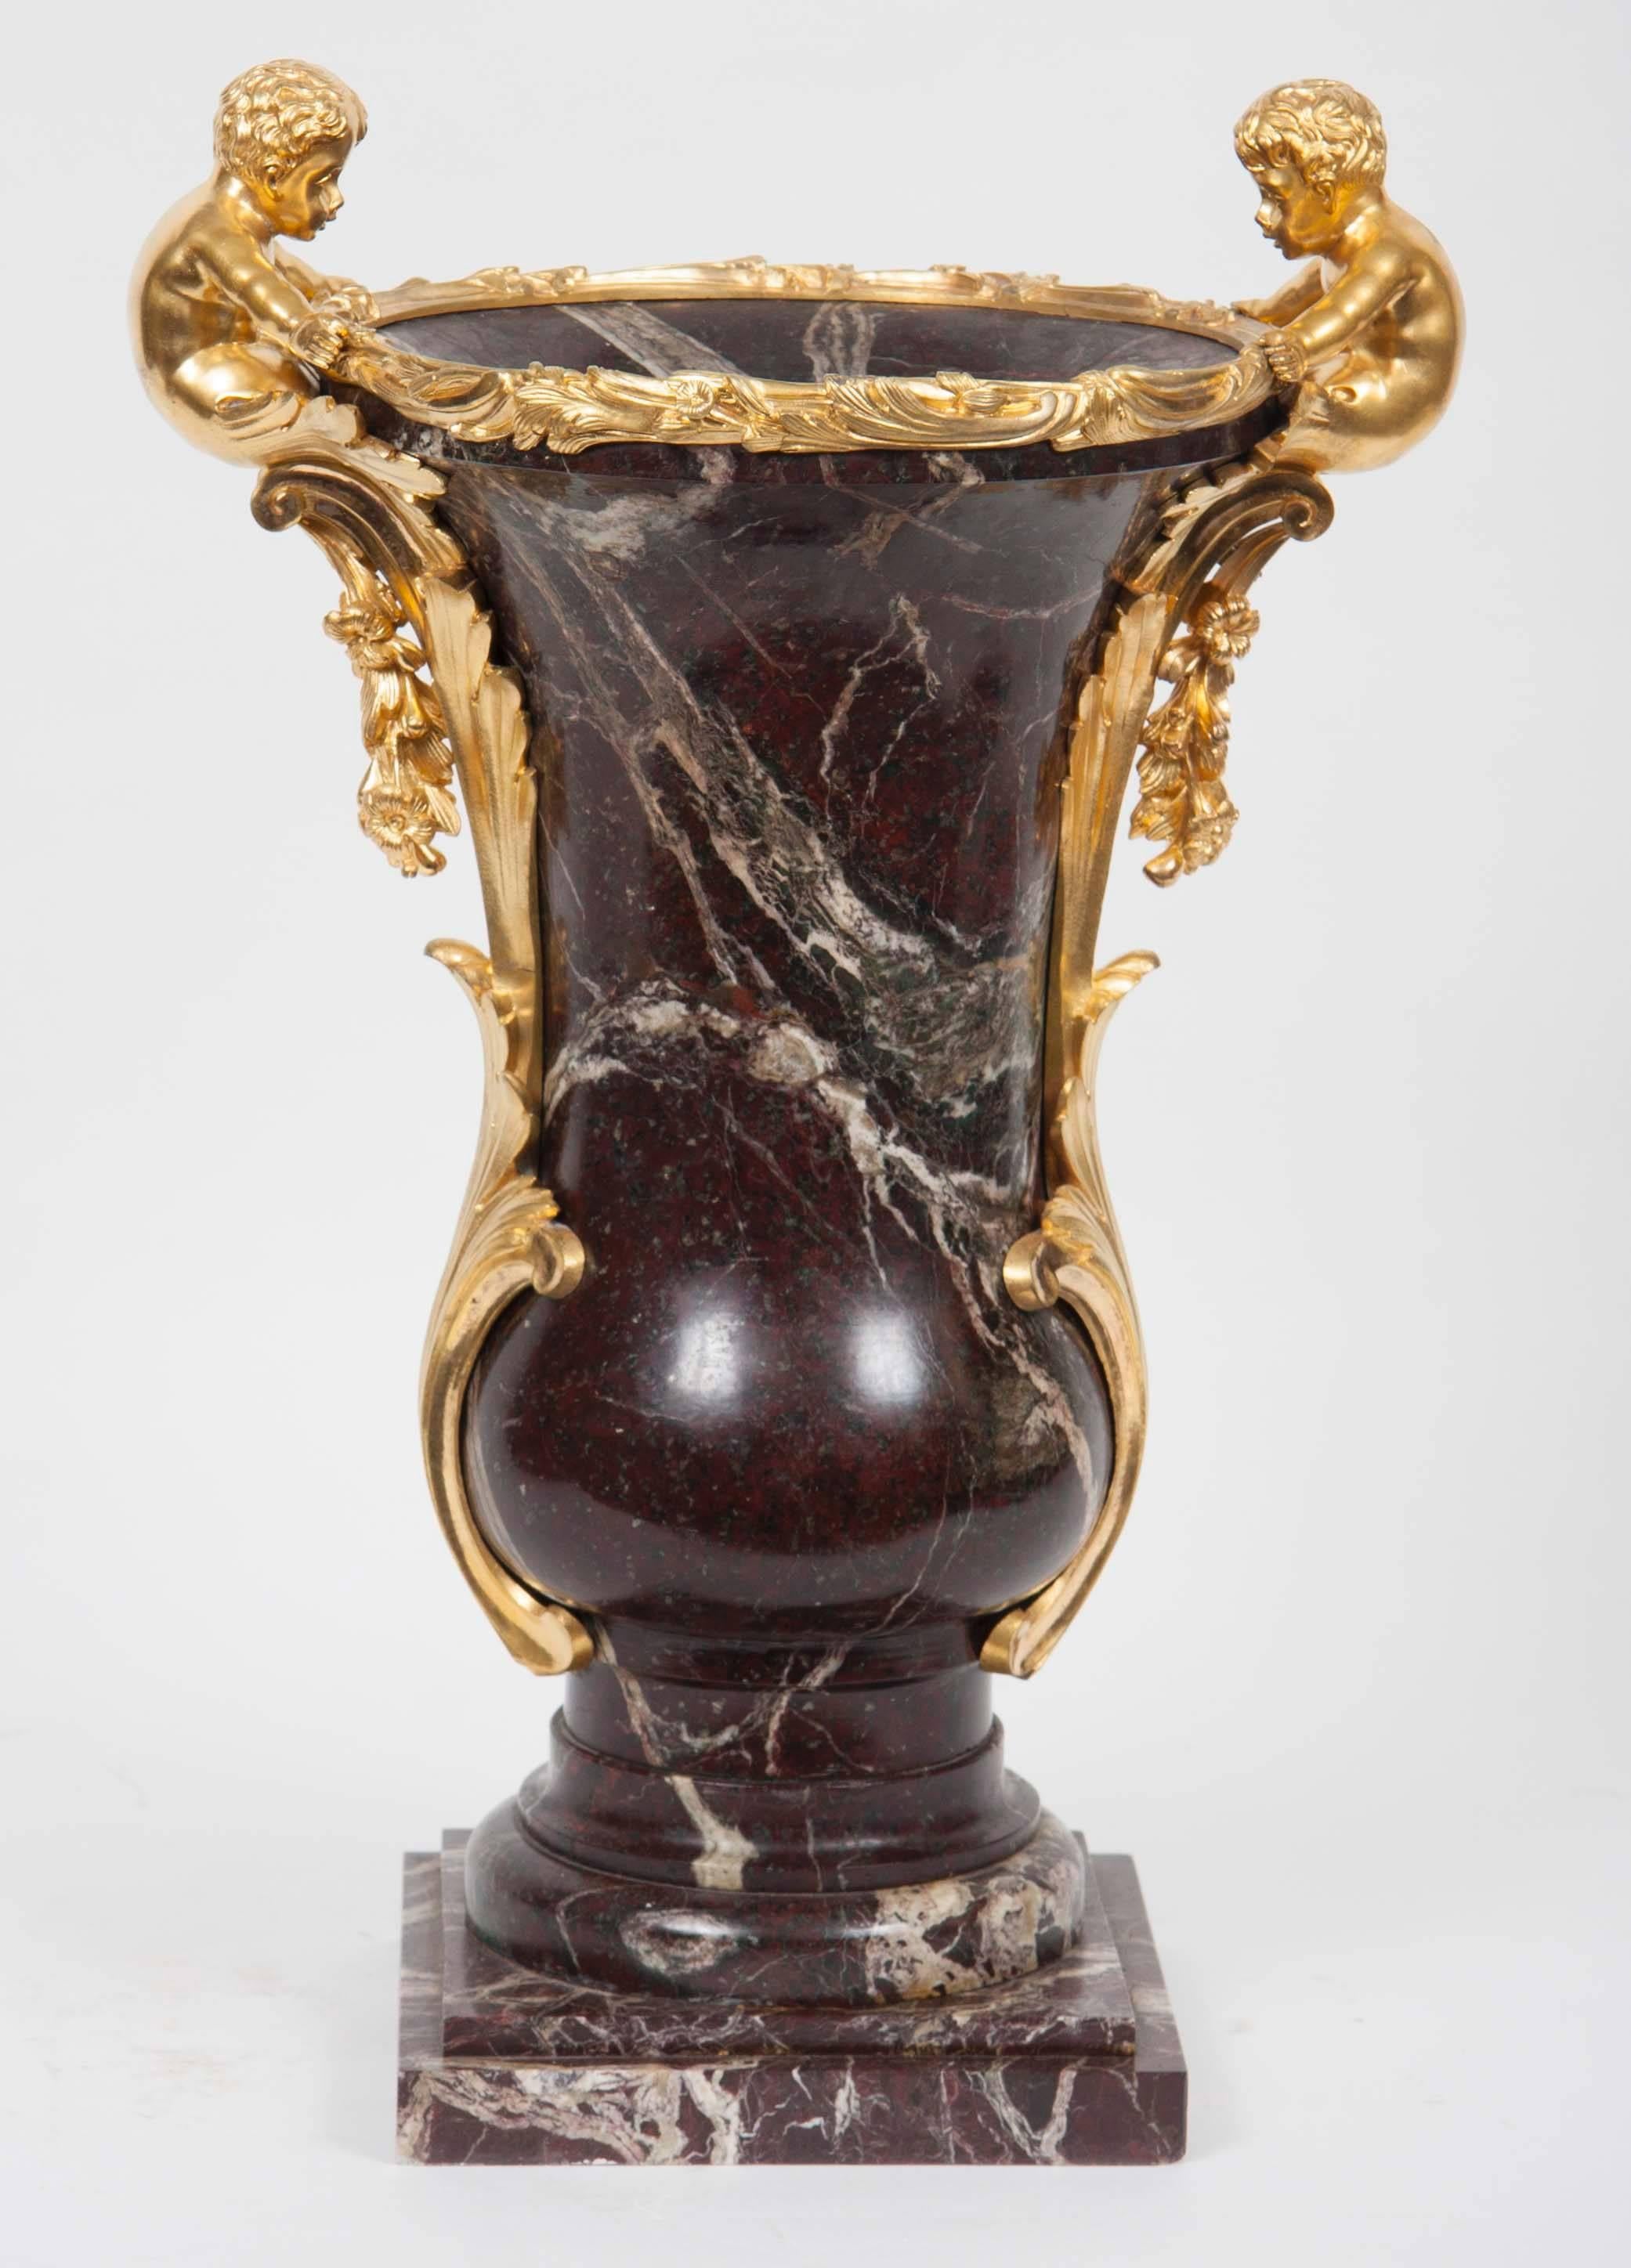 Zwei in Ormolu gefasste Marmorvasen mit kunstvollen vergoldeten Bronzeblättern und figuralen Fassungen, die die Urnen einrahmen.
Frankreich, 19. Jahrhundert.
Maße: 20-1/2 Zoll (52cm) Höhe.

NMA Inv. 454